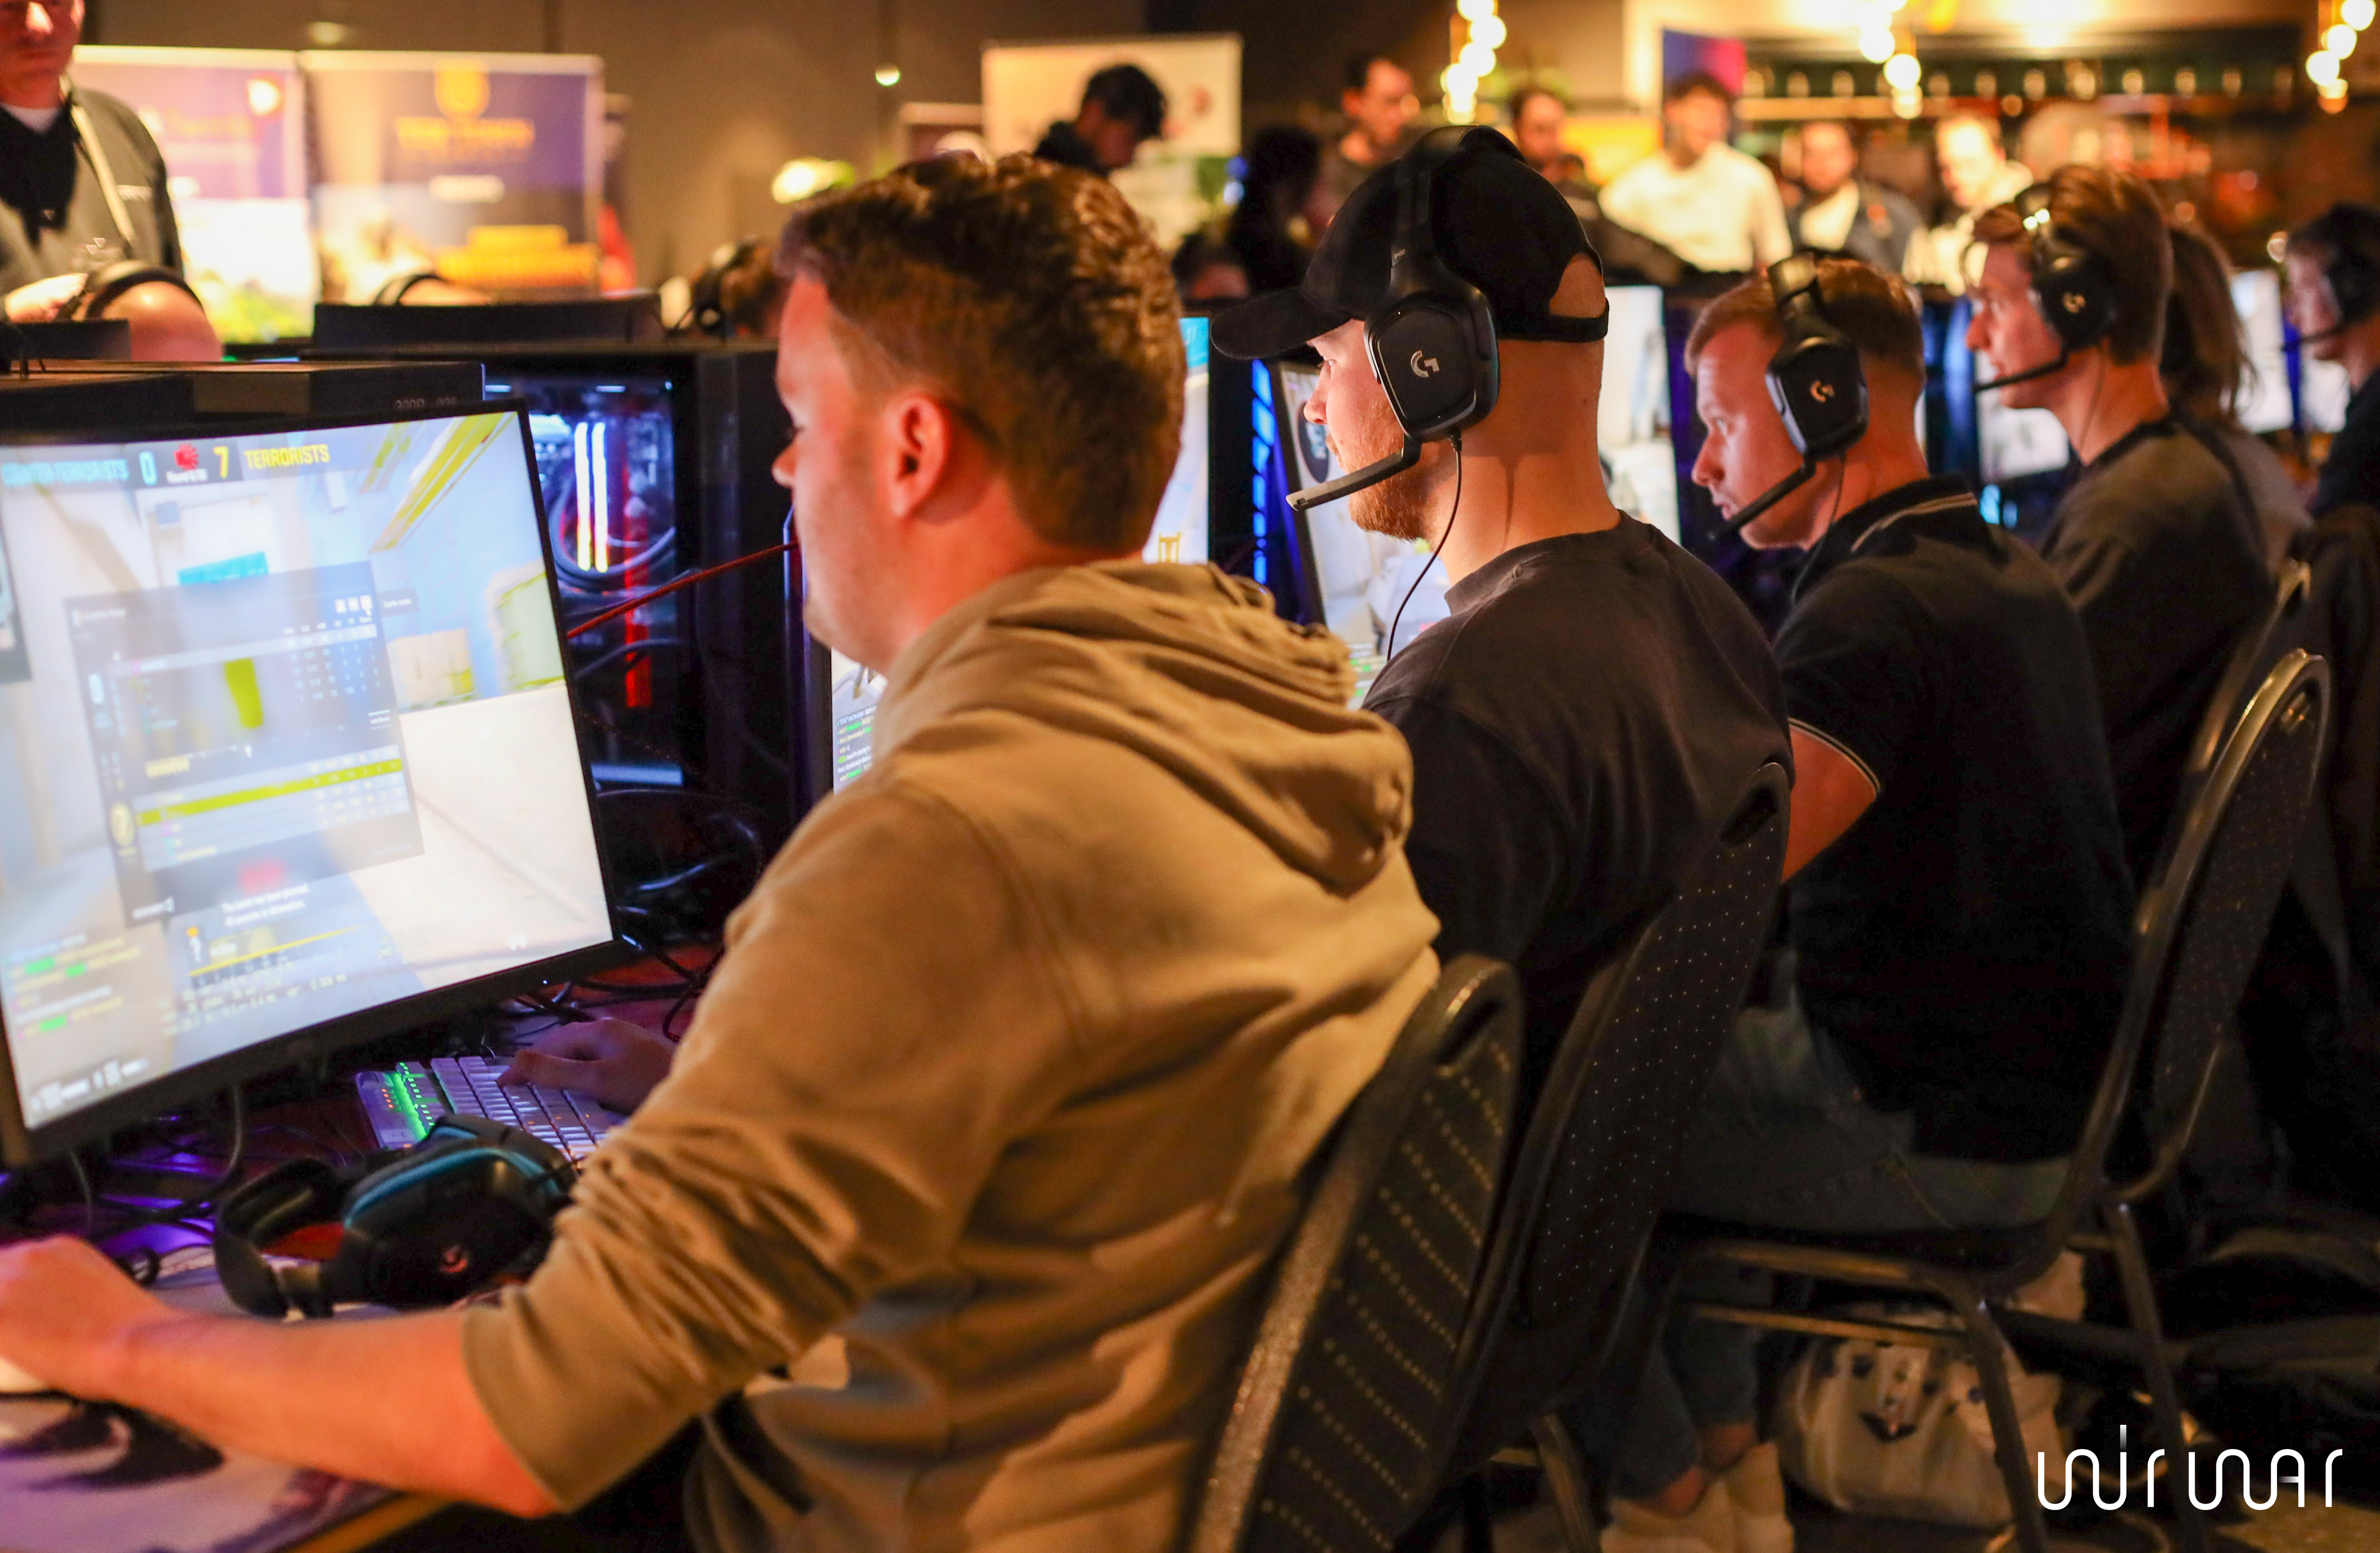 eSports Ladder linkt gamers aan Twents bedrijfsleven, lancering bij festival in Grolsch Veste